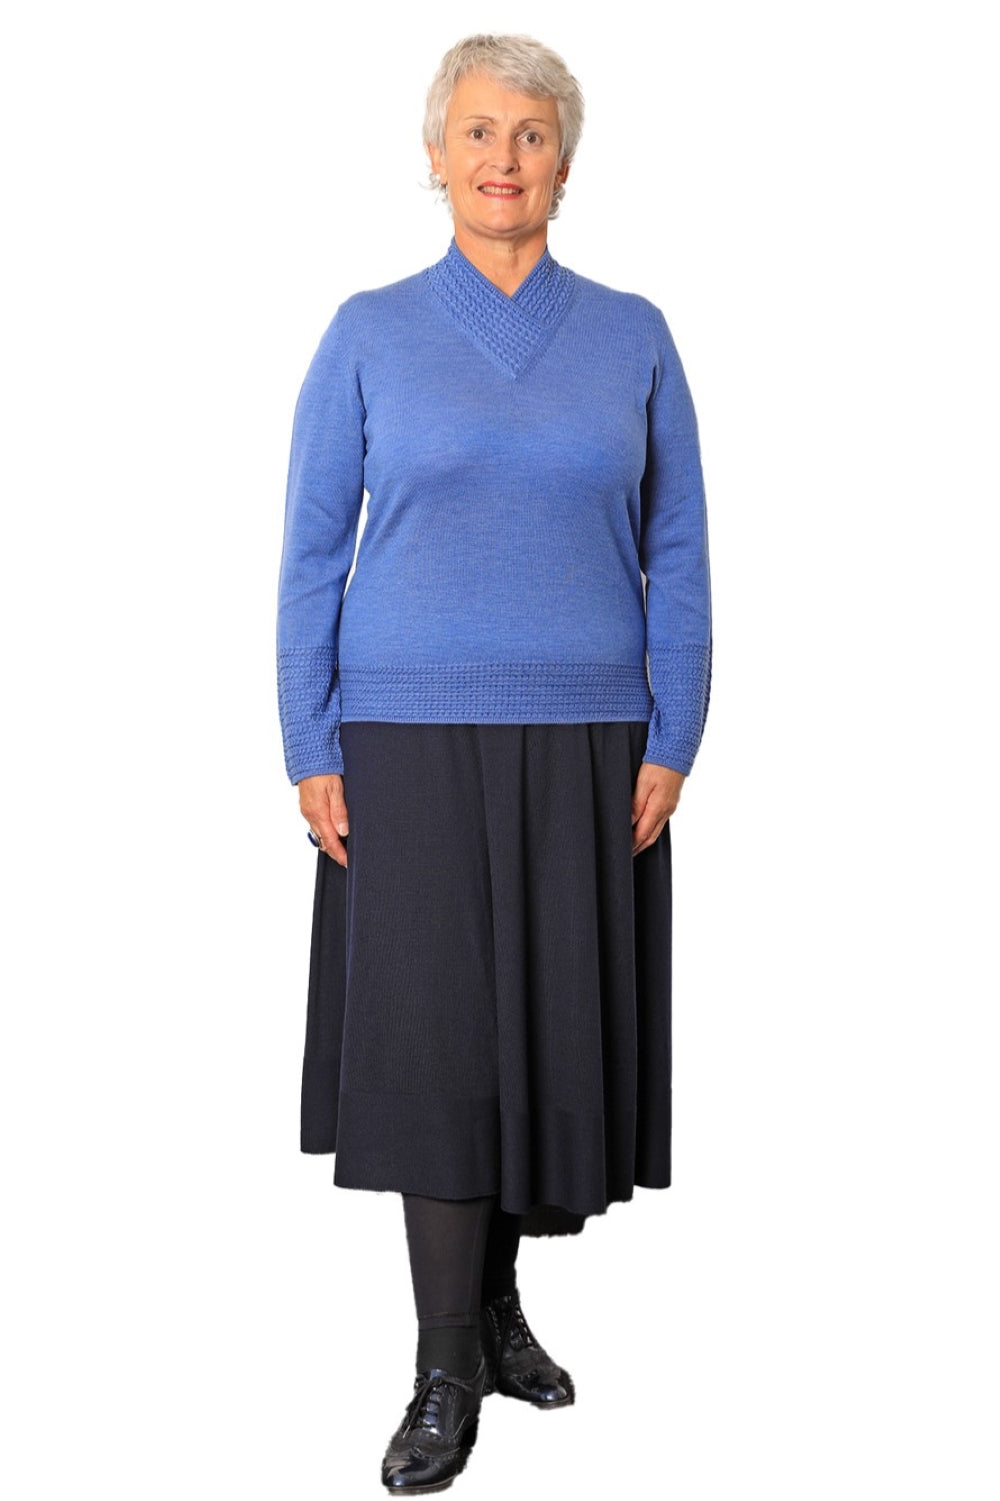 100% Extra Fine Merino Flared Skirt - The Lisa Navy